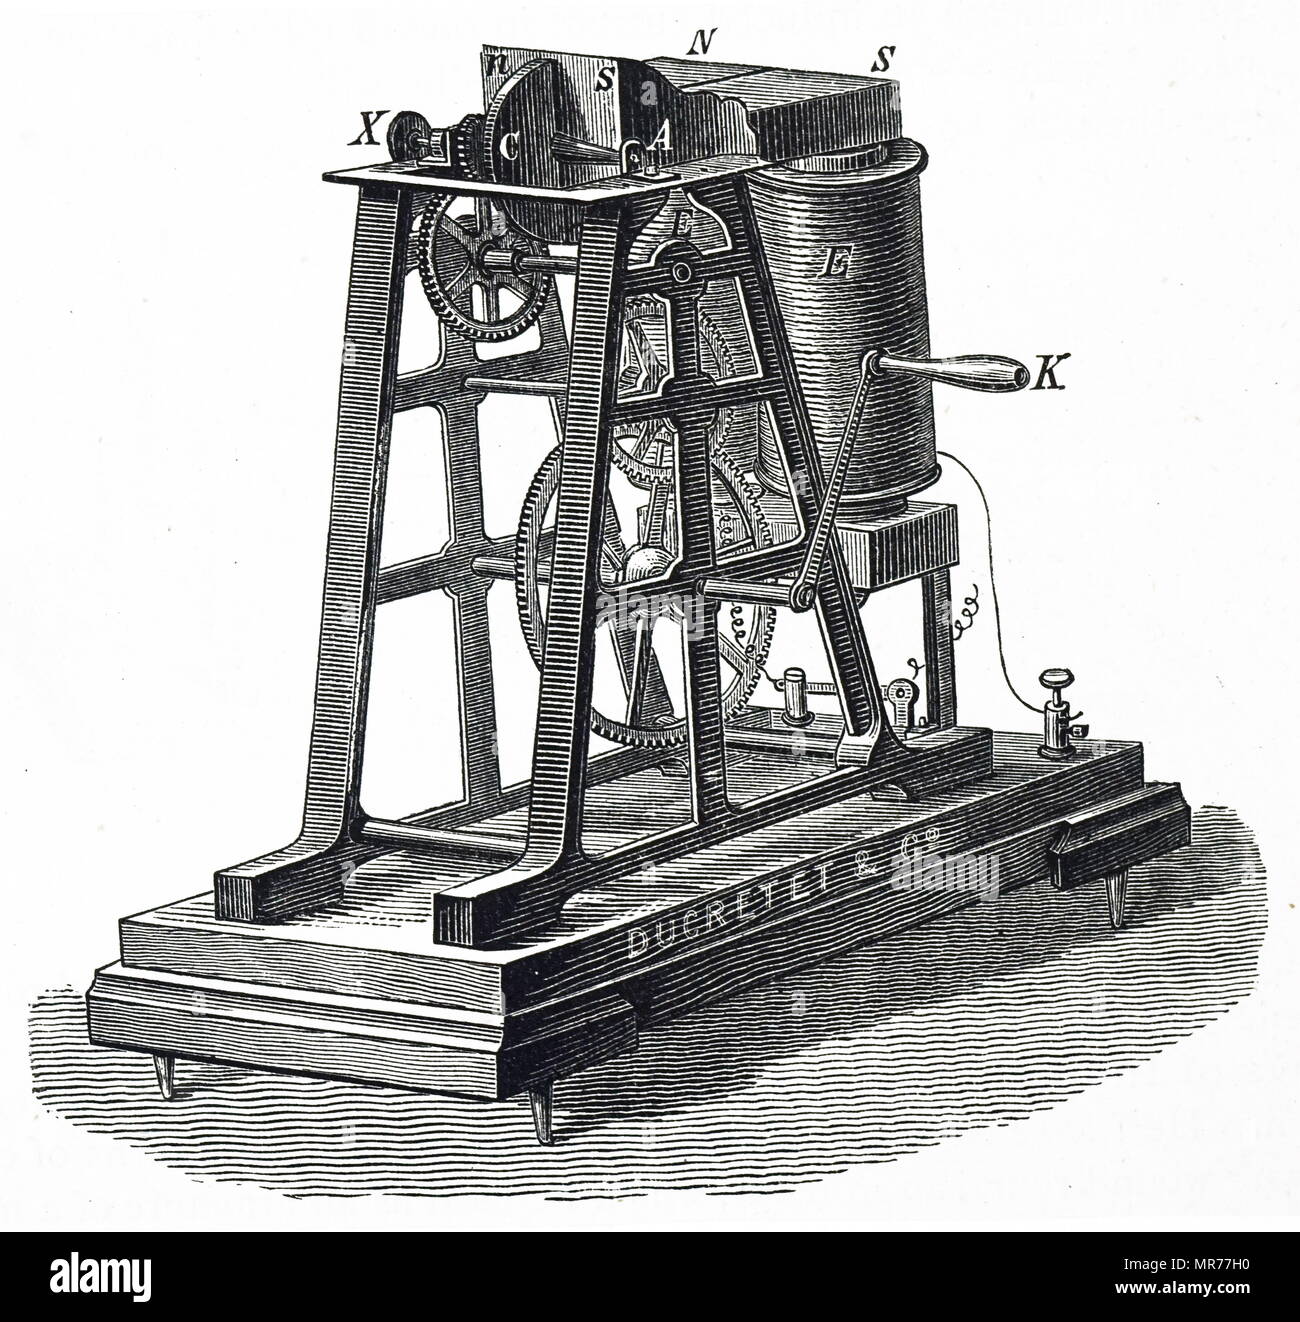 Gravure représentant Léon Foucault's machine pour produire un courant dans une plaque de cuivre C). Léon Foucault (1819-1868) Physicien français connu pour sa démonstration du pendule de Foucault, un appareil démontrant l'effet de la rotation de la Terre. En date du 19e siècle Banque D'Images